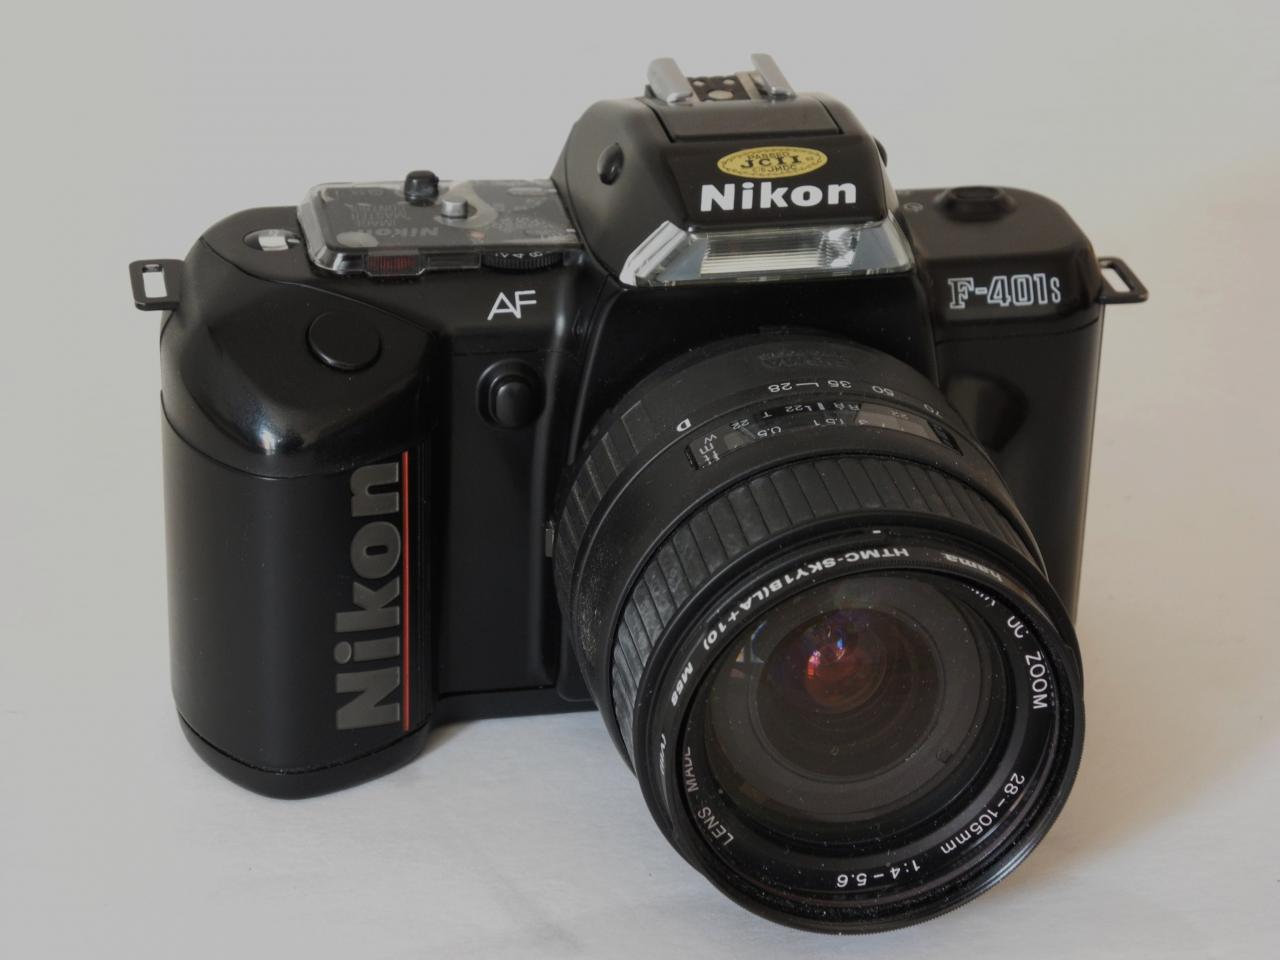 *Nikon F401s film135 1989*